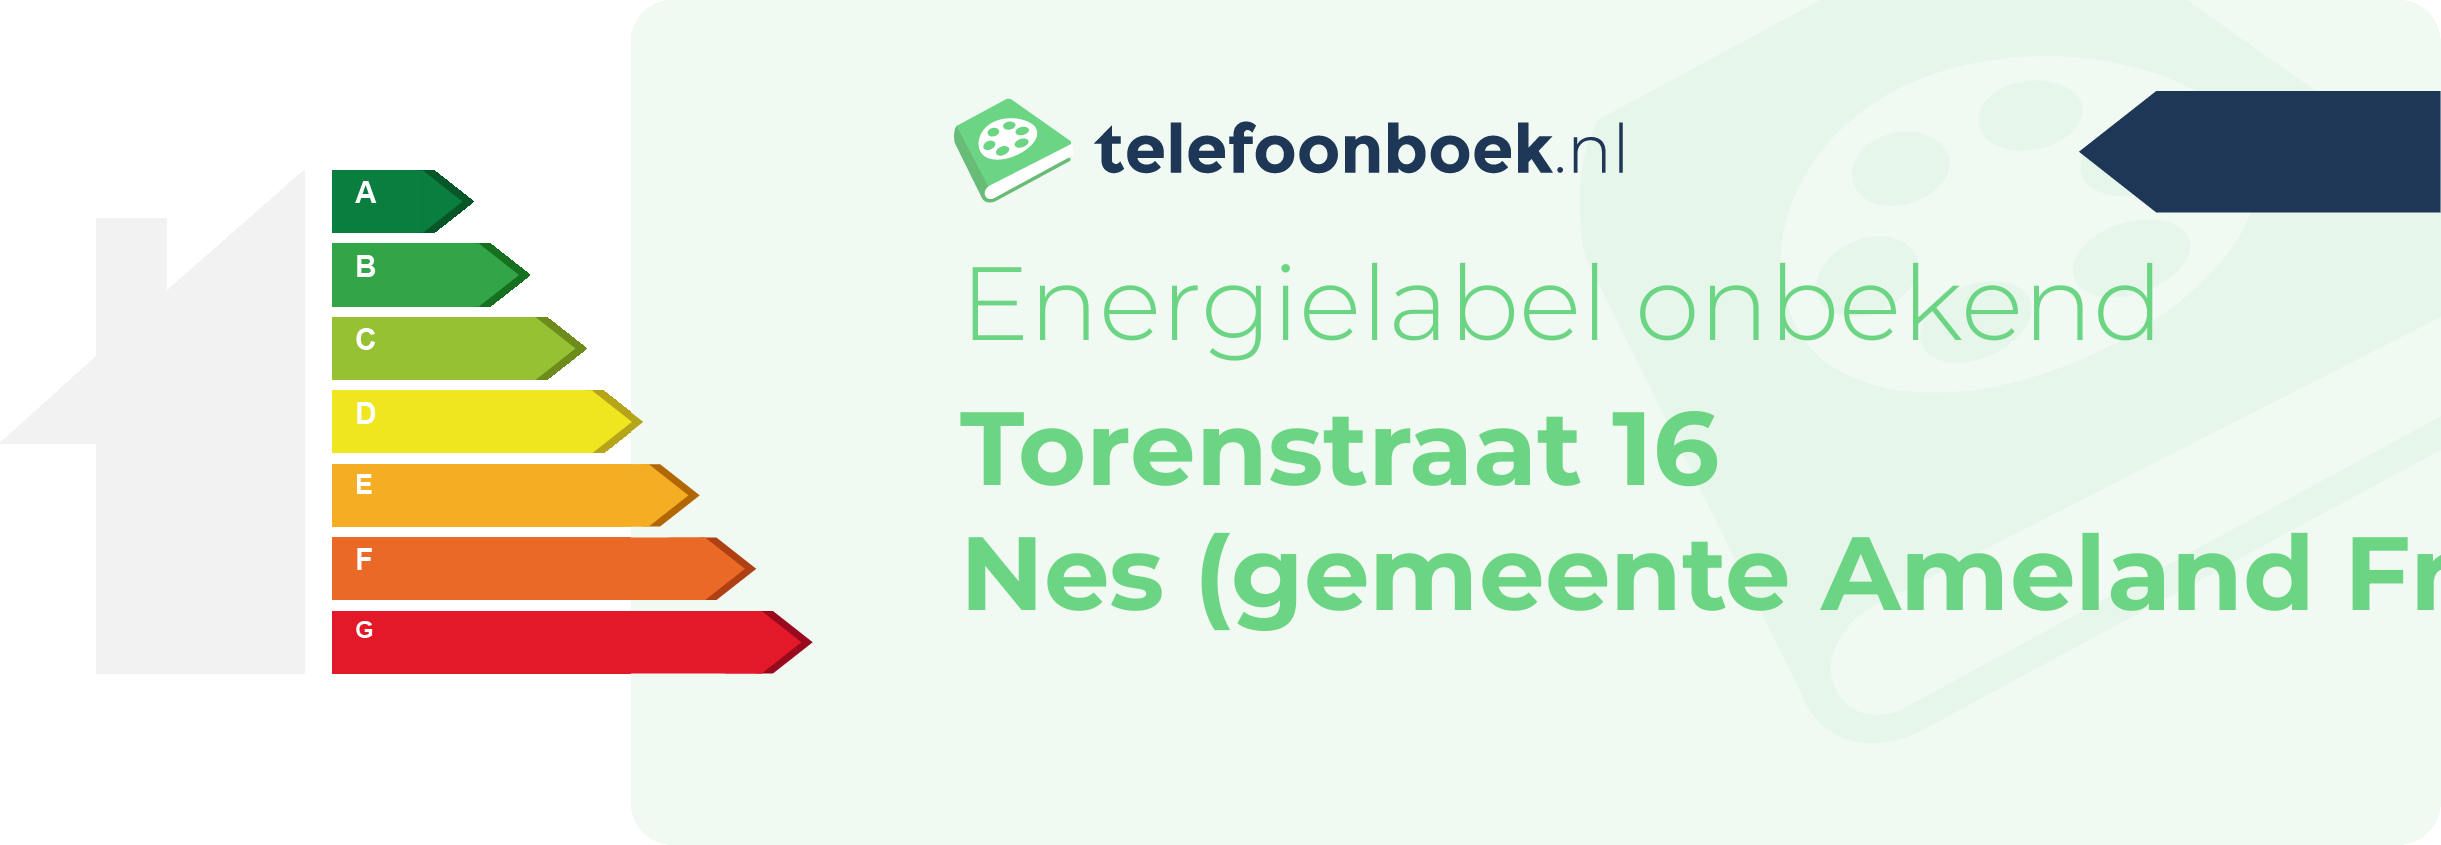 Energielabel Torenstraat 16 Nes (gemeente Ameland Friesland)